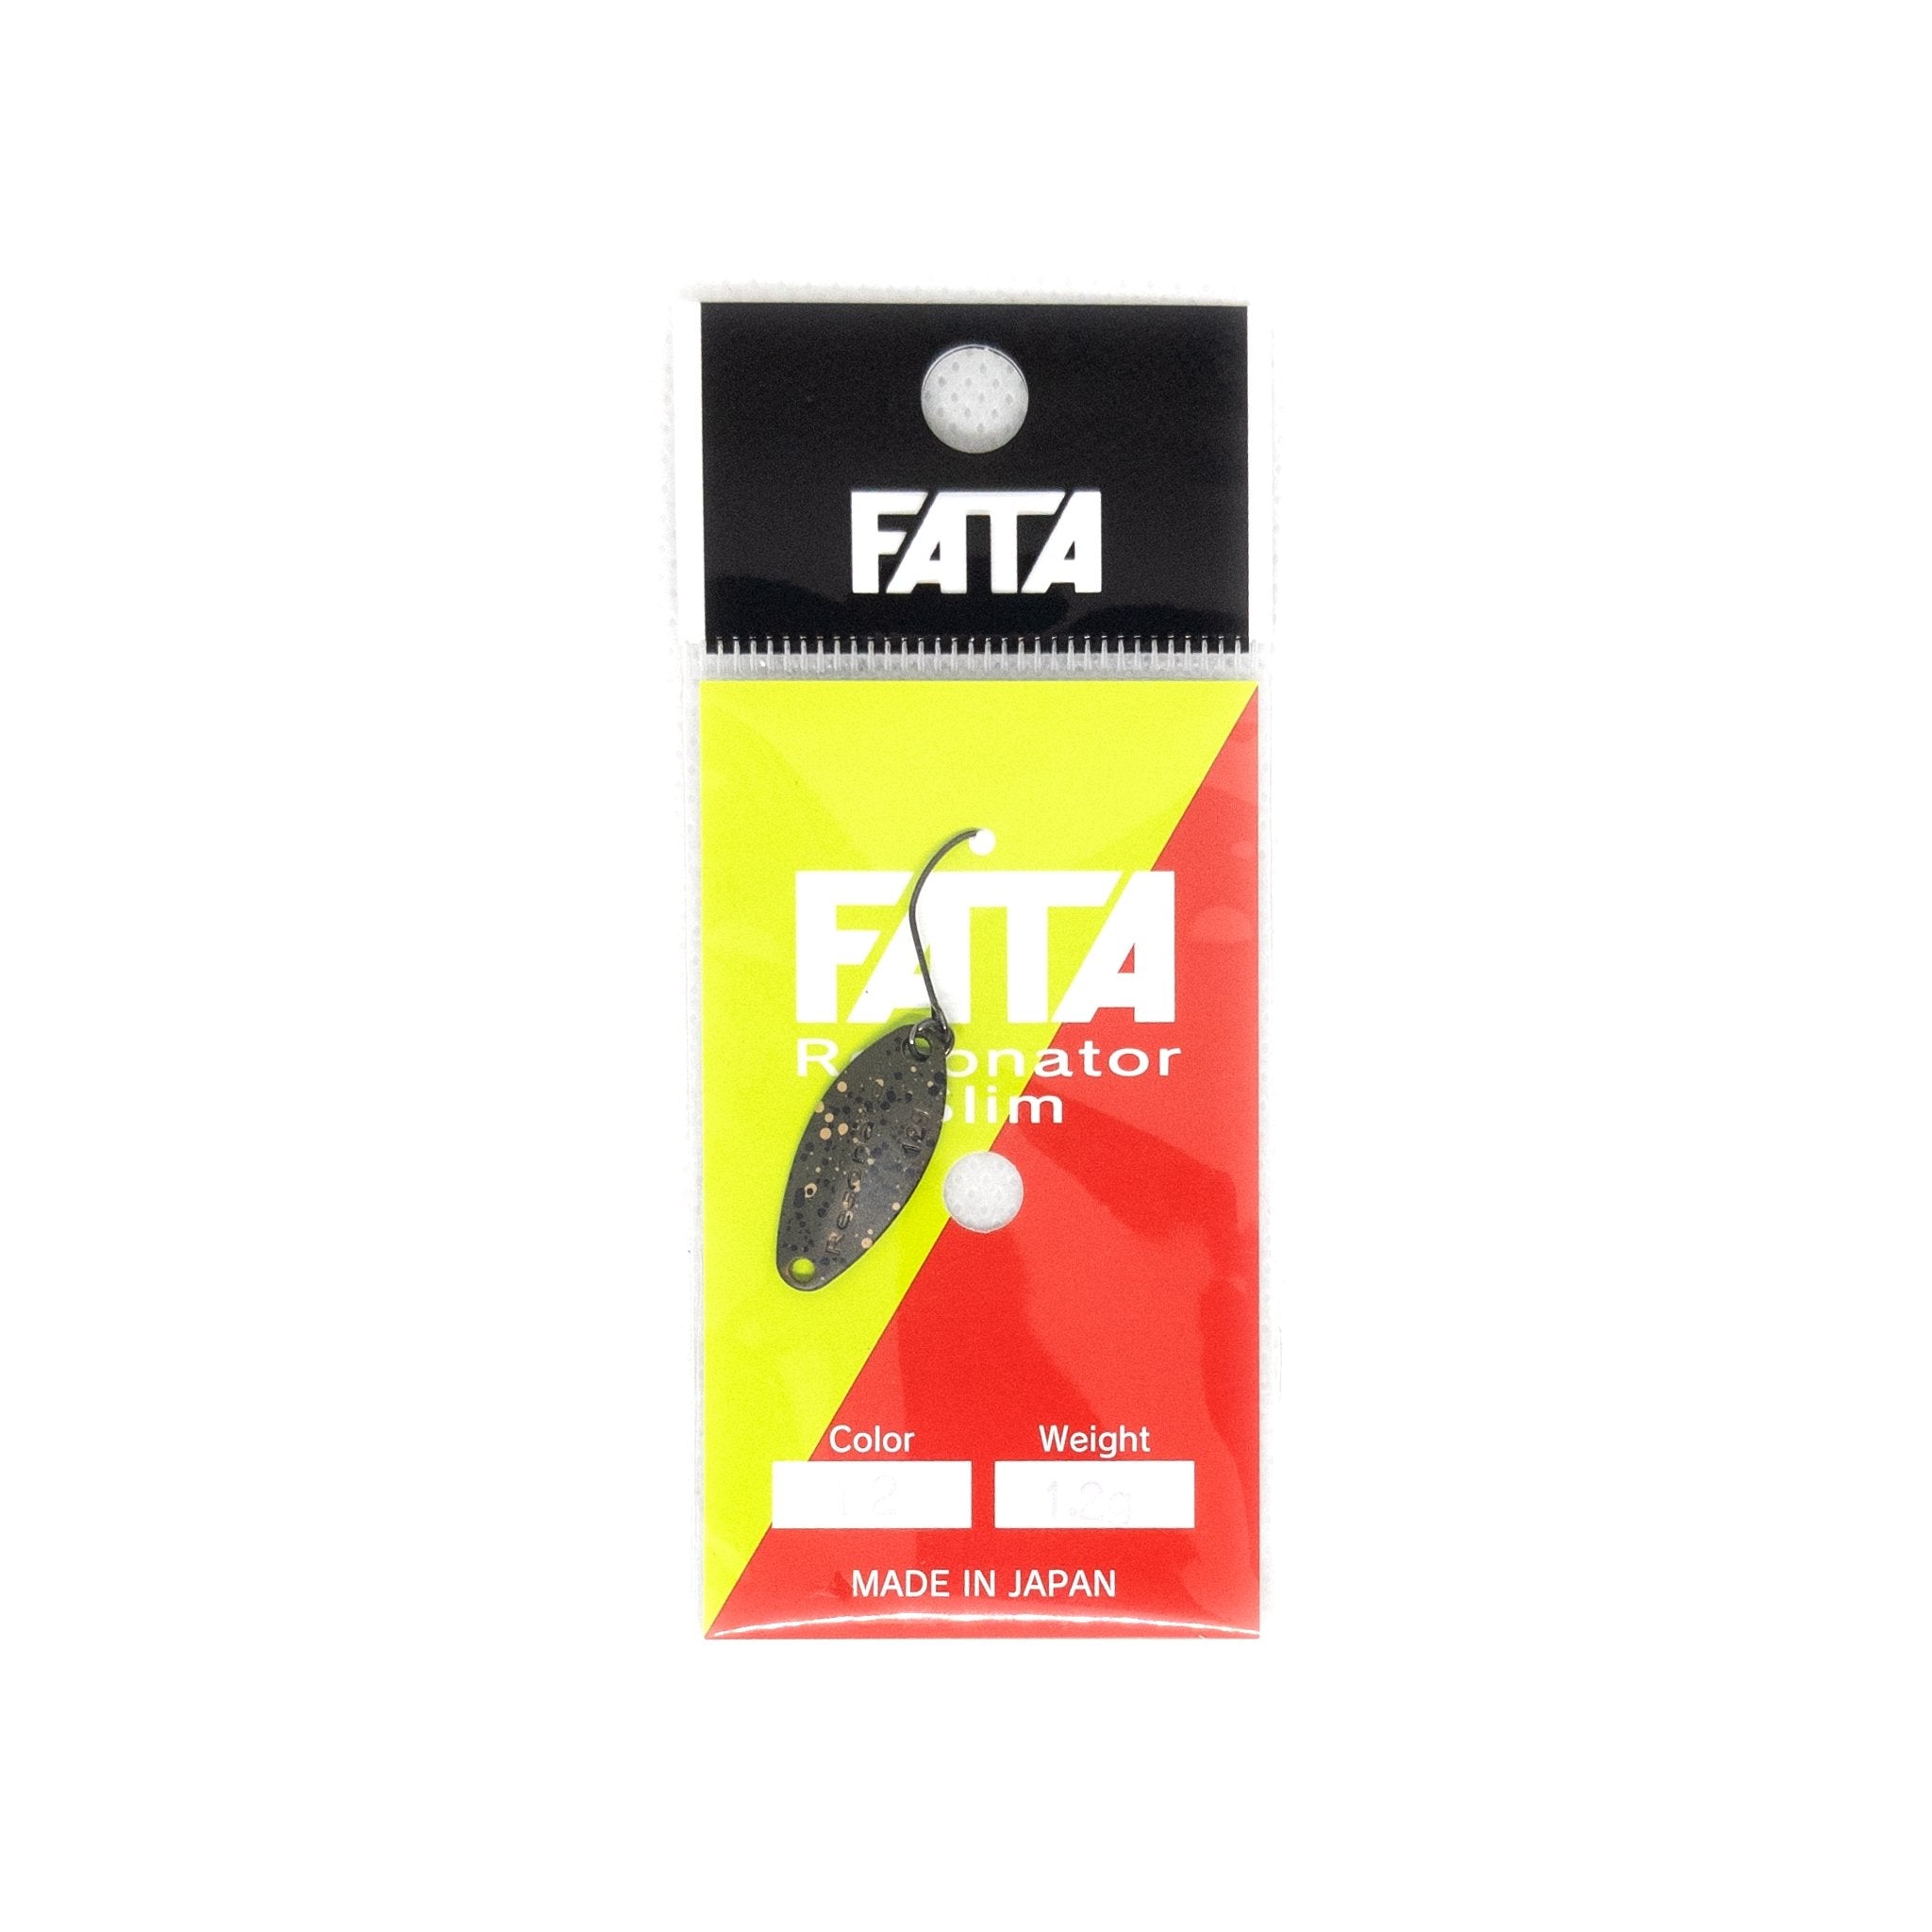 Gosen FATA Resonator sp Slim 1.2g Trout Spoon Color "#12" - The Borrowed Lure